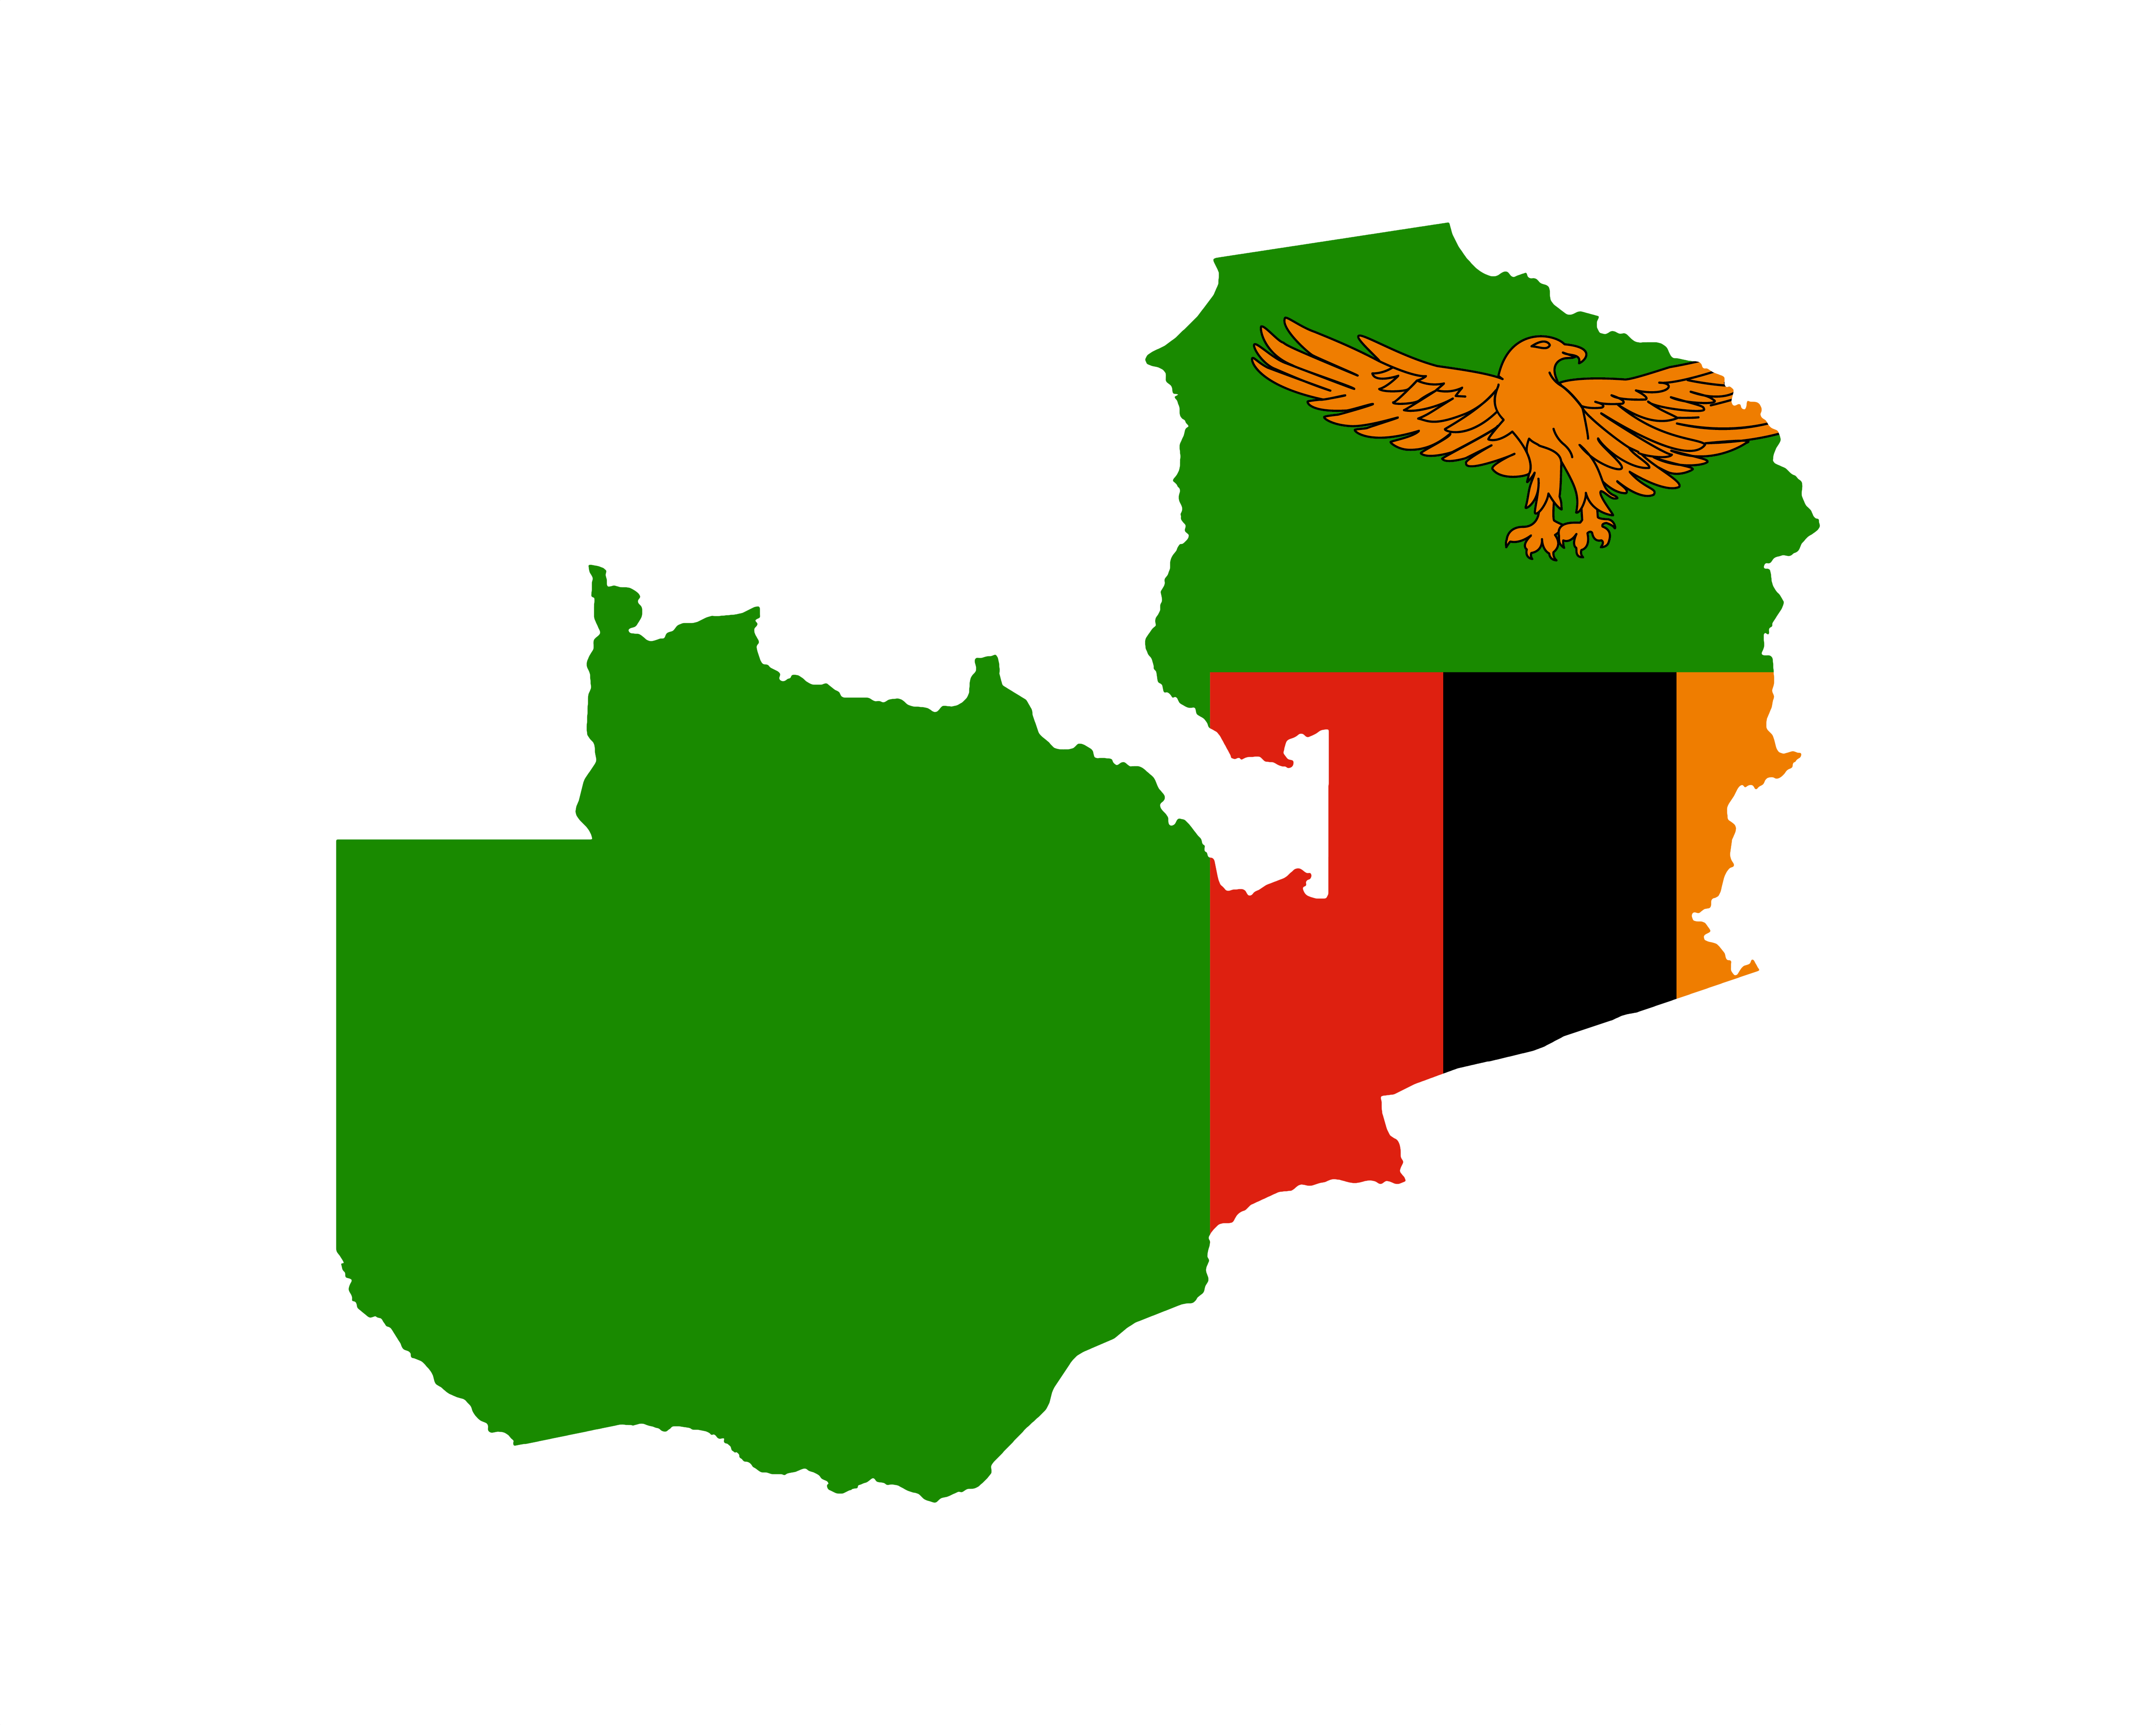 zemekoule Zambie